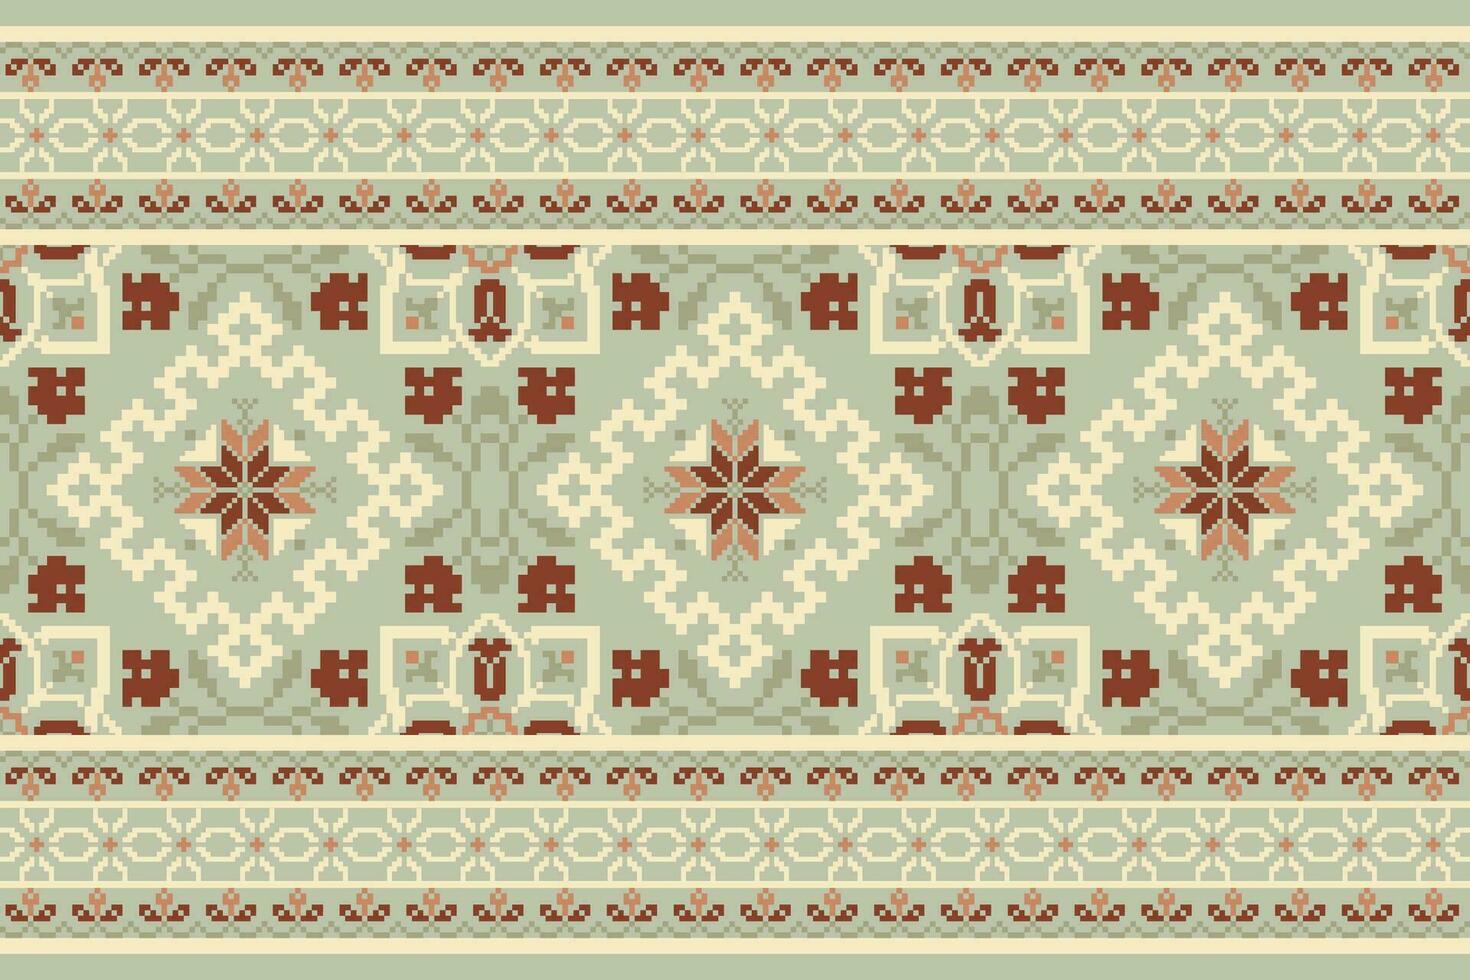 floral Cruz ponto bordado em verde background.geometric étnico oriental padronizar tradicional.asteca estilo abstrato vetor ilustração.design para textura,tecido,vestuário,embrulho,decoração,canga.